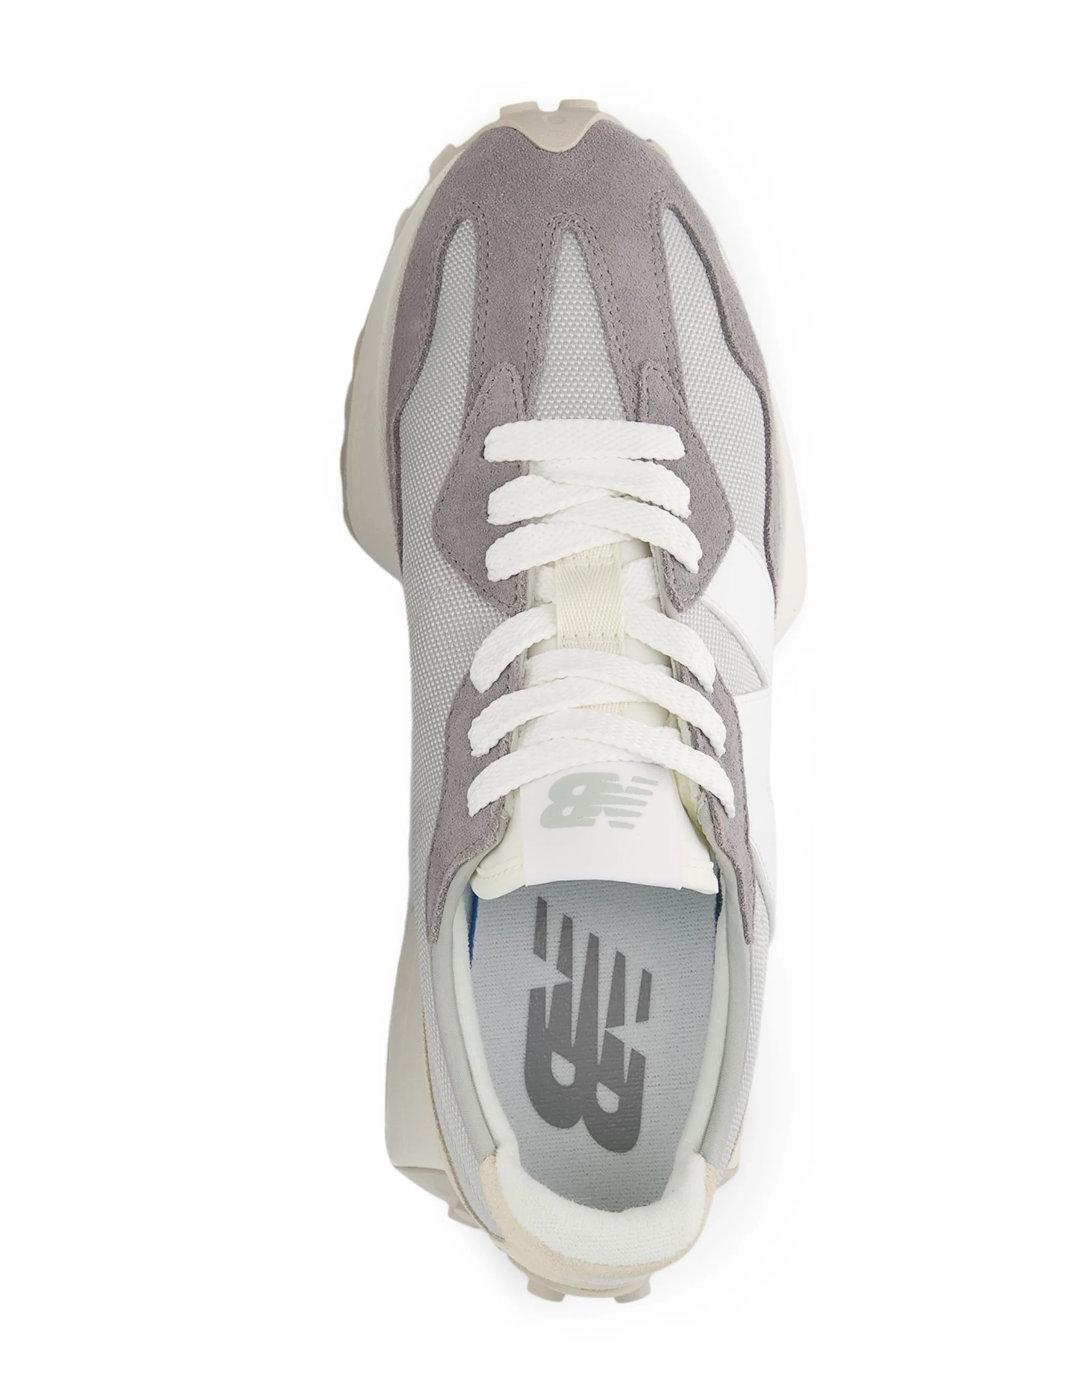 Zapatillas New Balance 327 gris y blanco unisex